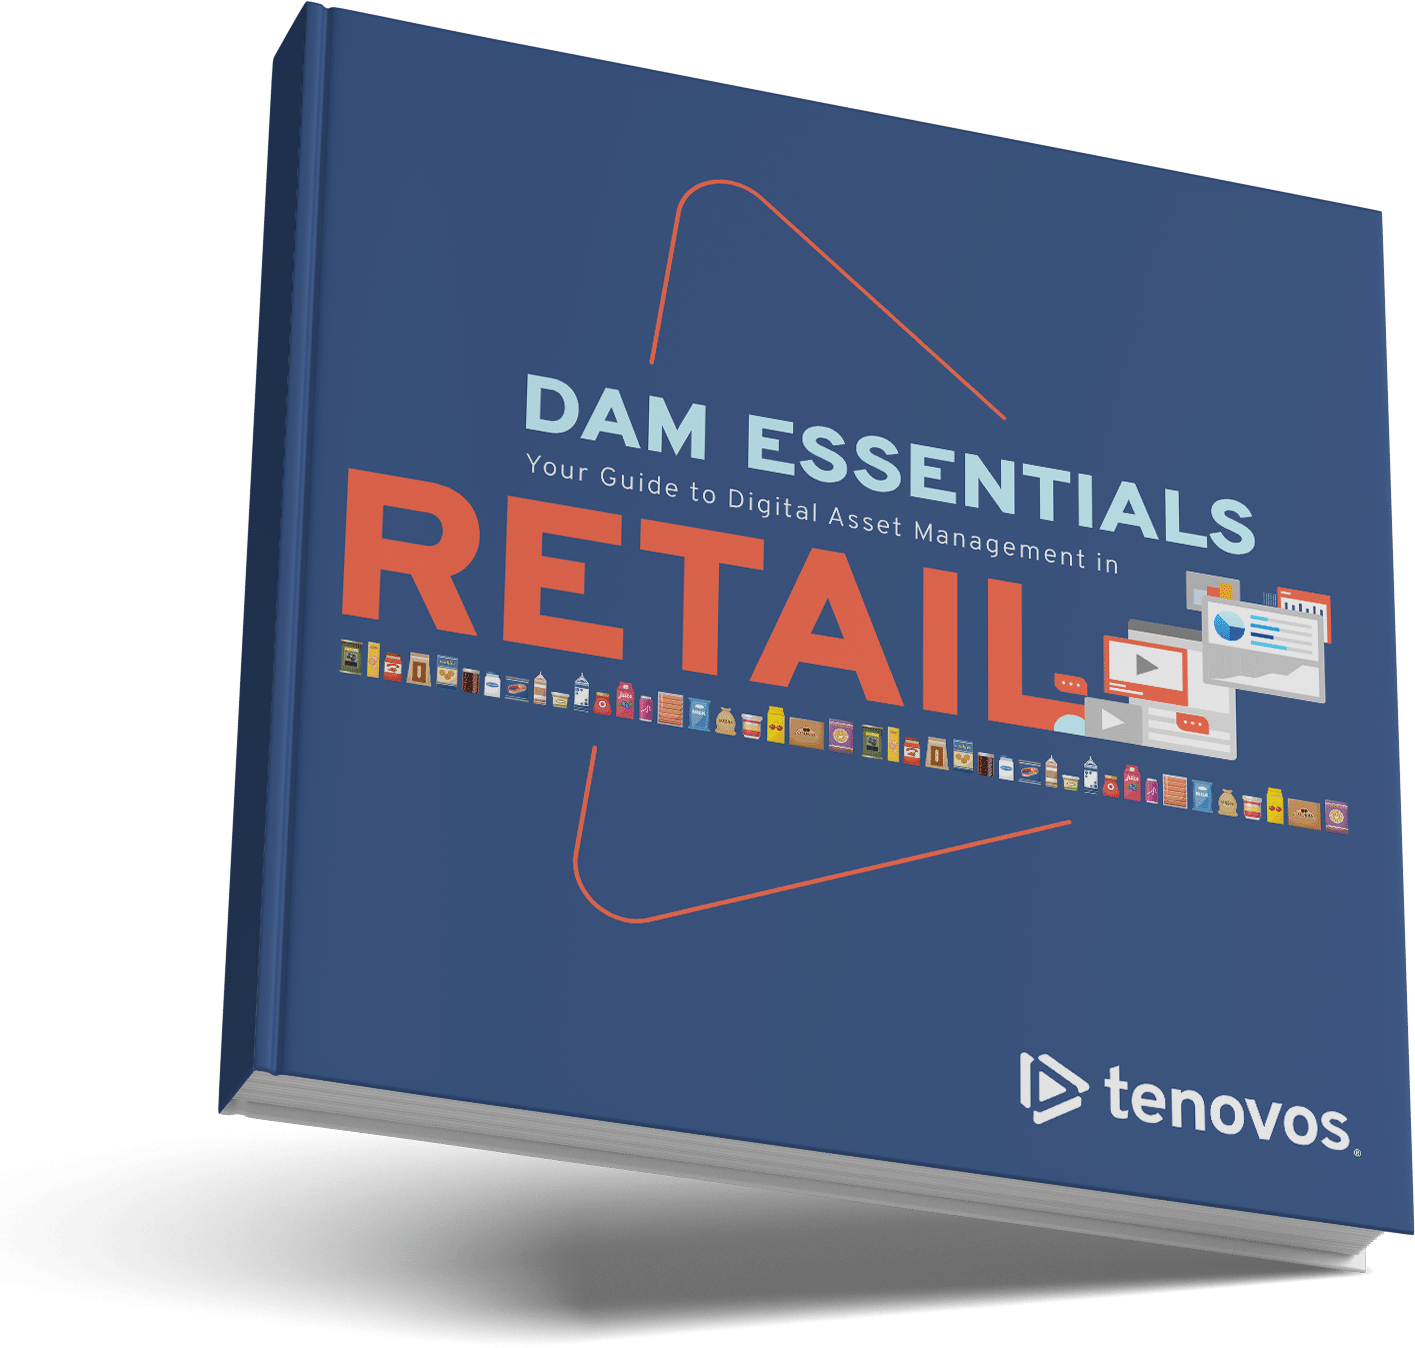 DAM Essentials Retail